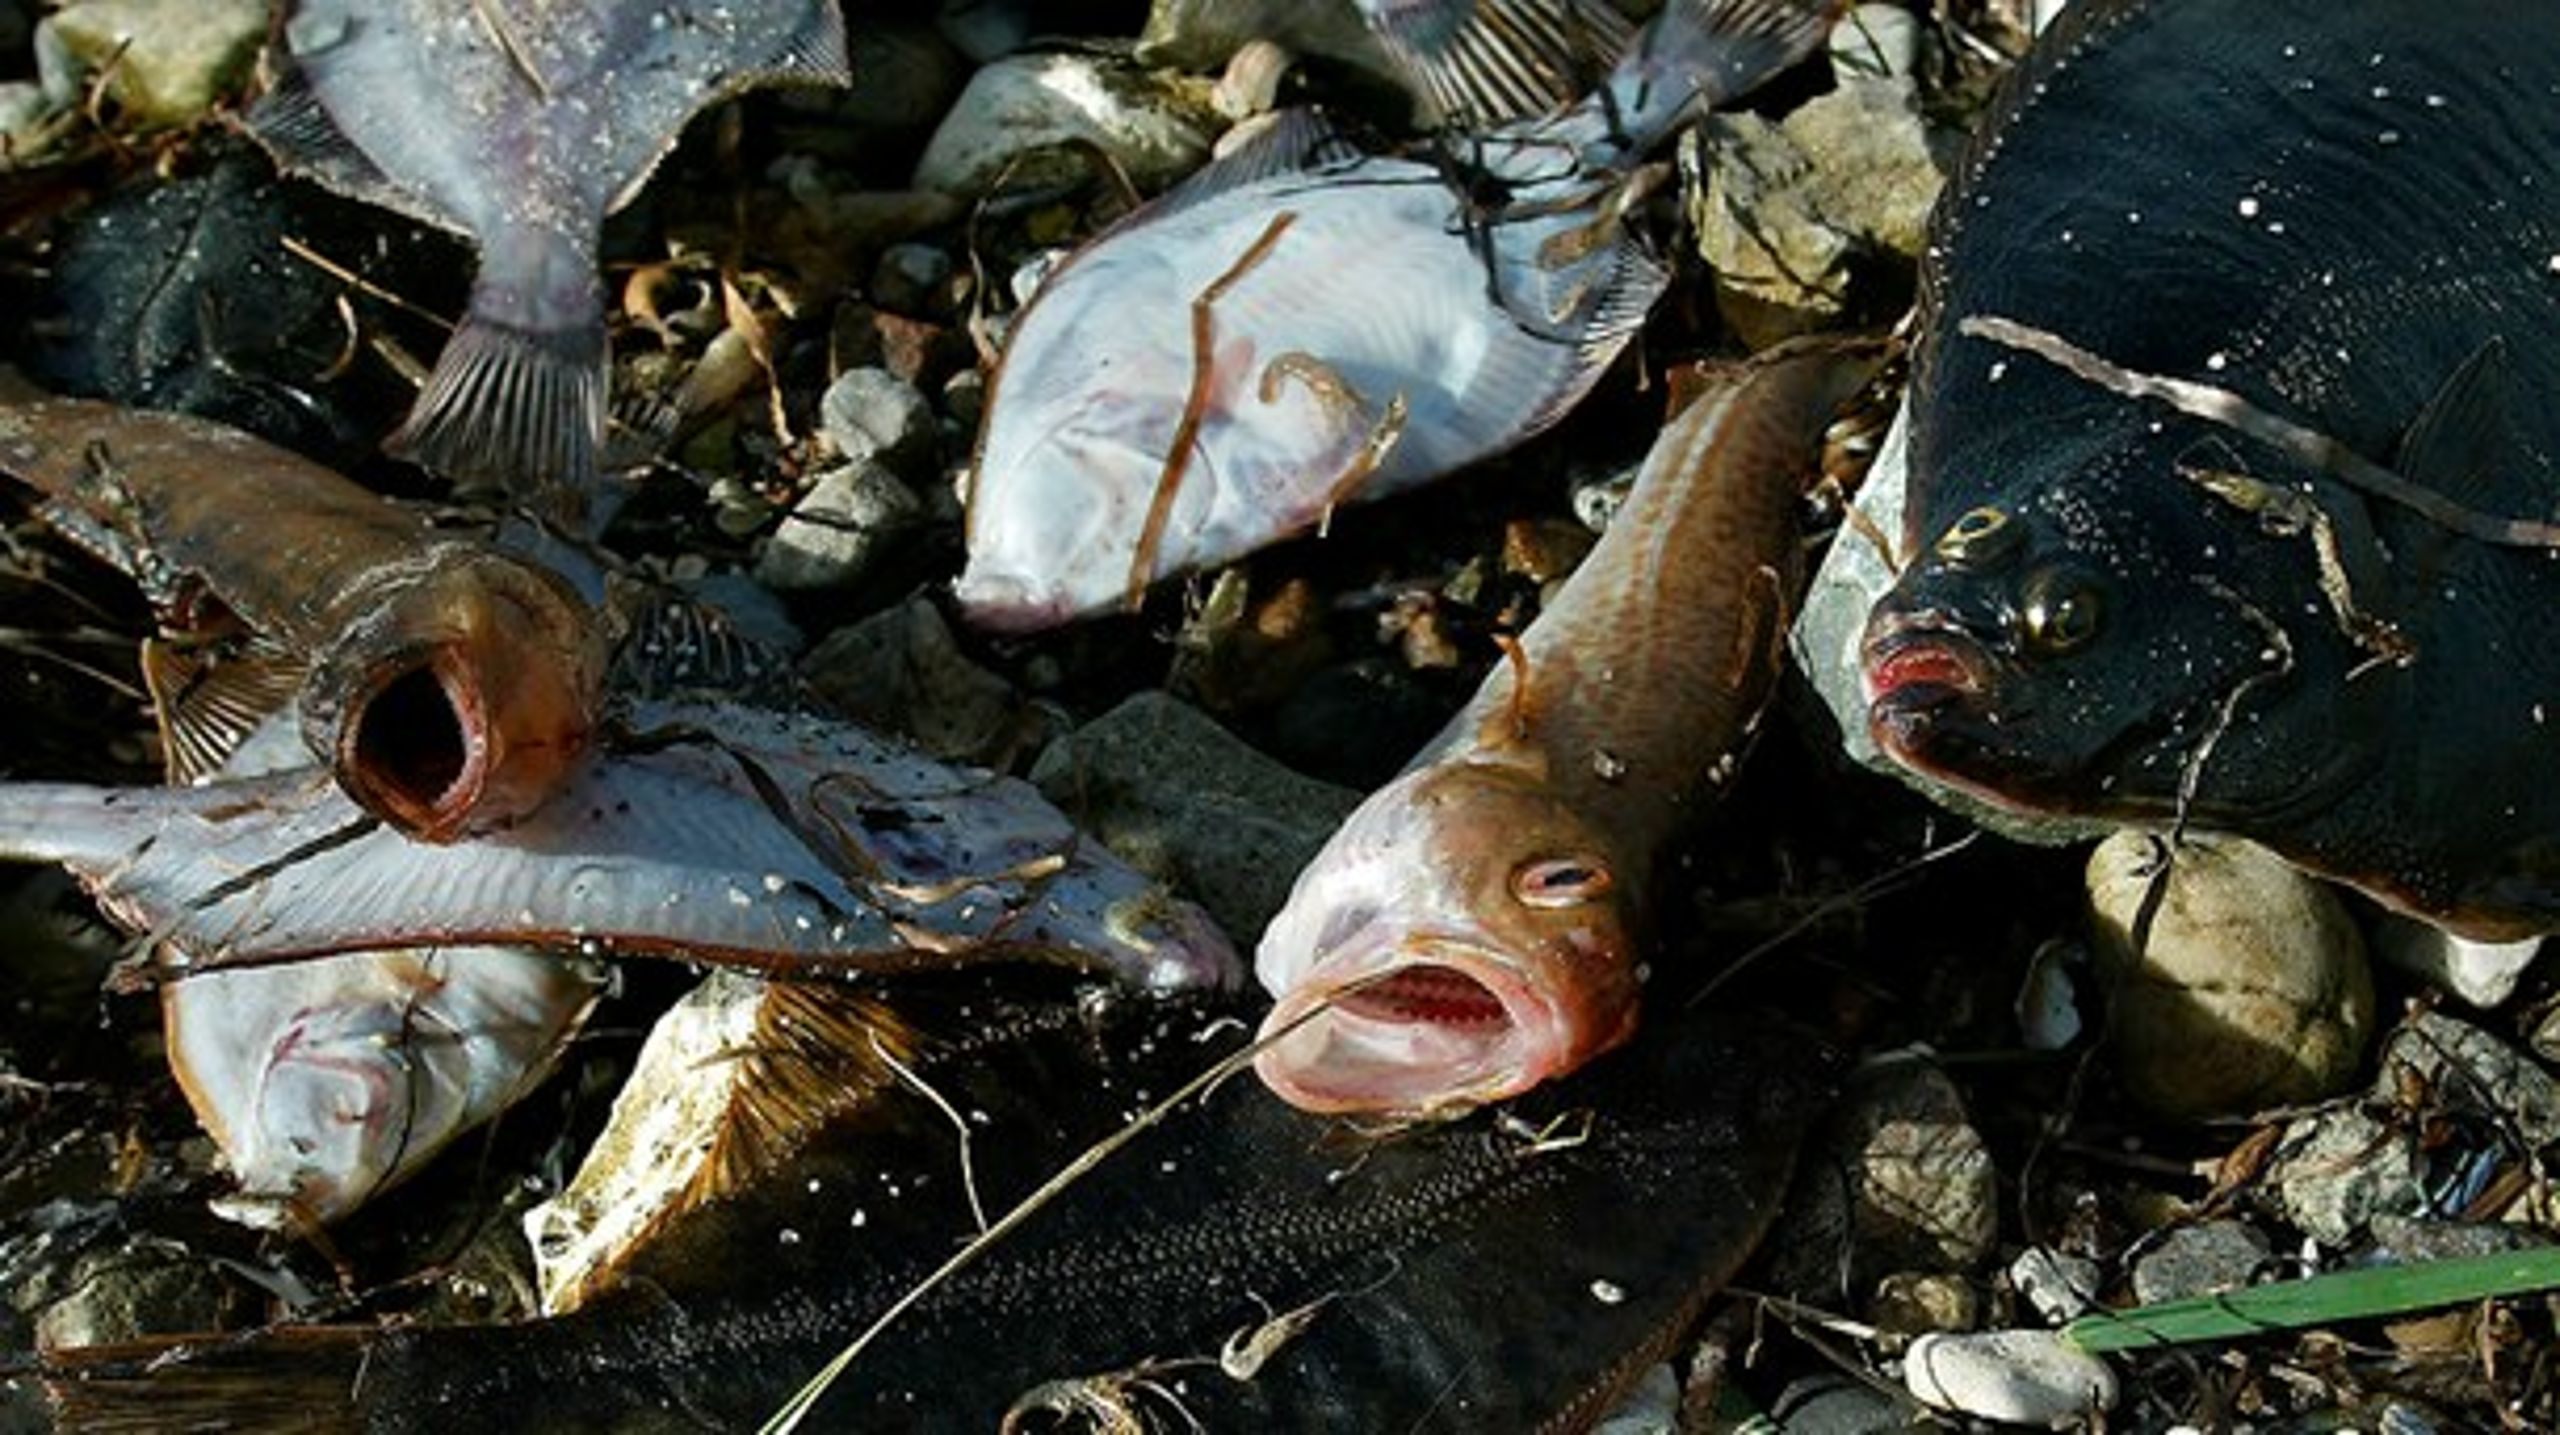 Der findes videnskabeligt bevis for, at bundtrawlfiskeri er katastrofalt for havmiljøet, understreger fire naturorganisationer.